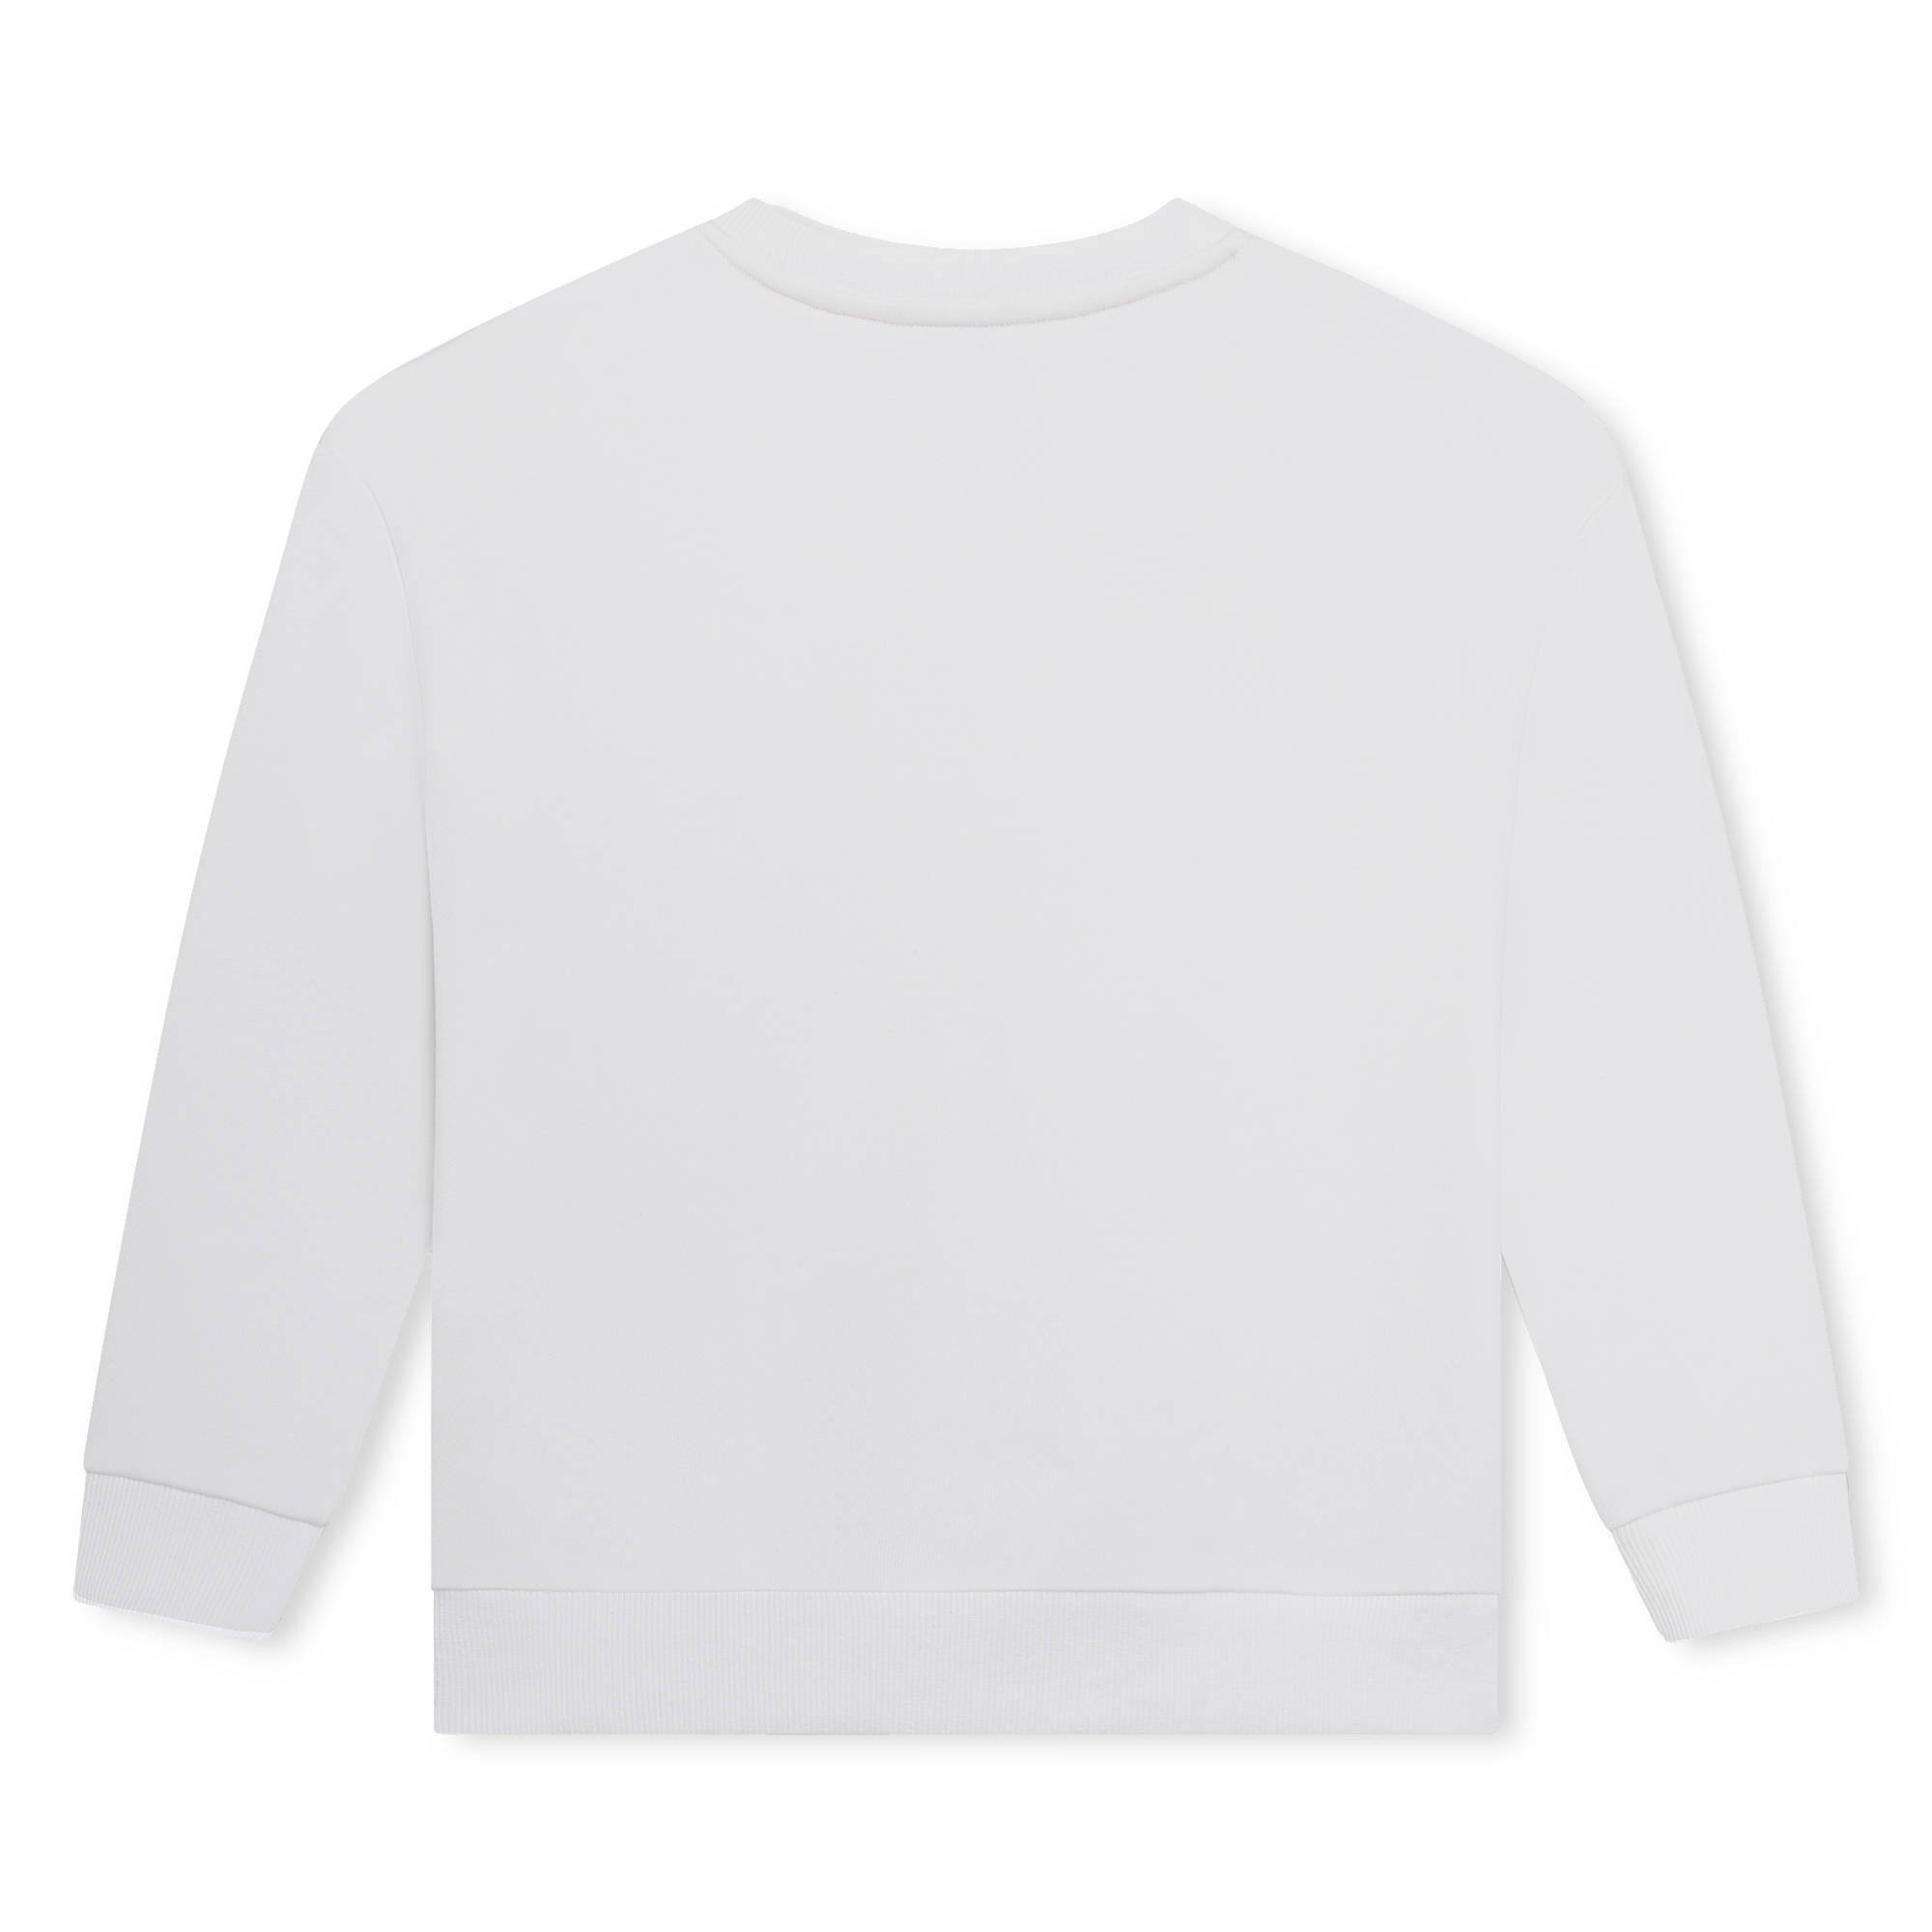 Fleece sweatshirt SONIA RYKIEL for GIRL